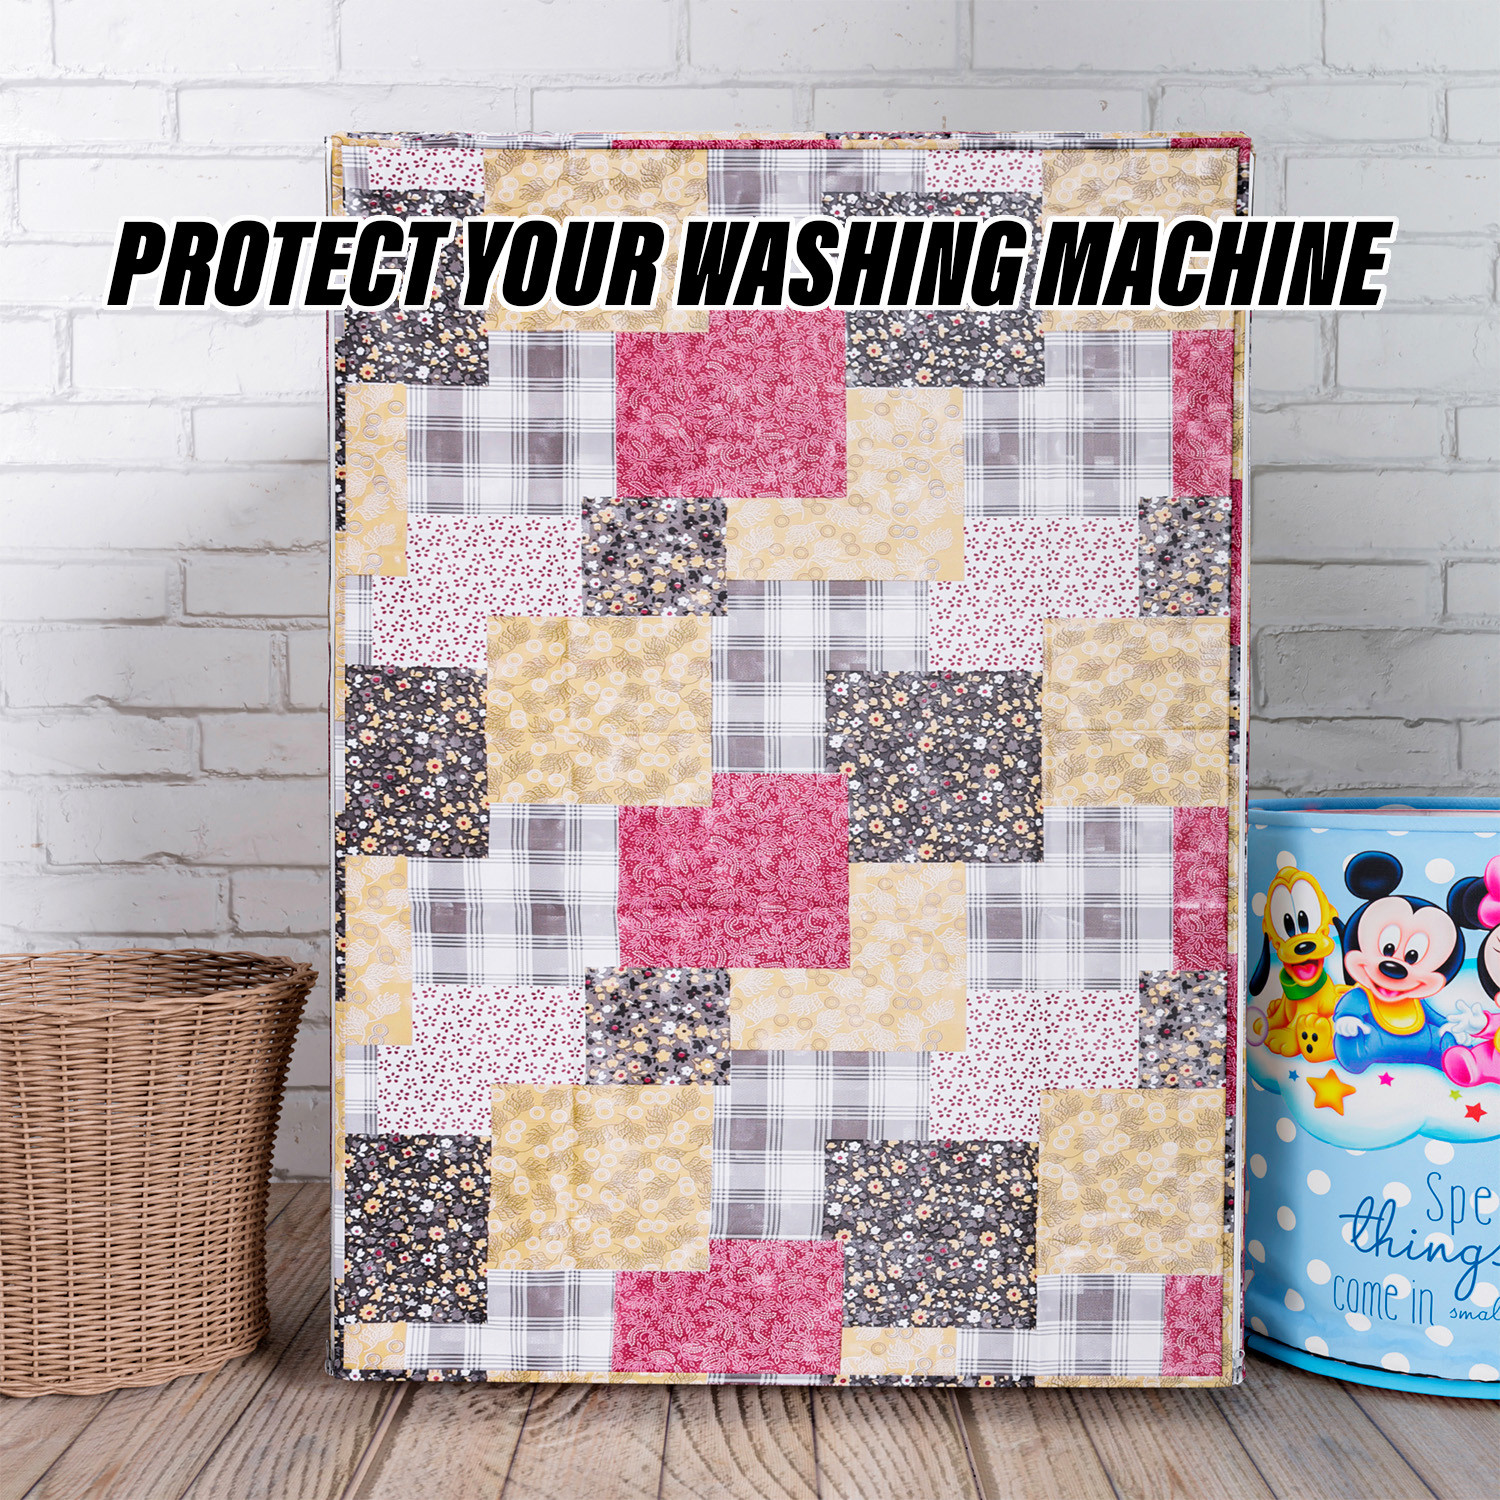 Kuber Industries Washing Machine Cover | Black Small Flower Print Washing Machine Cover | PVC Front Load Washing Machine Cover | Multi